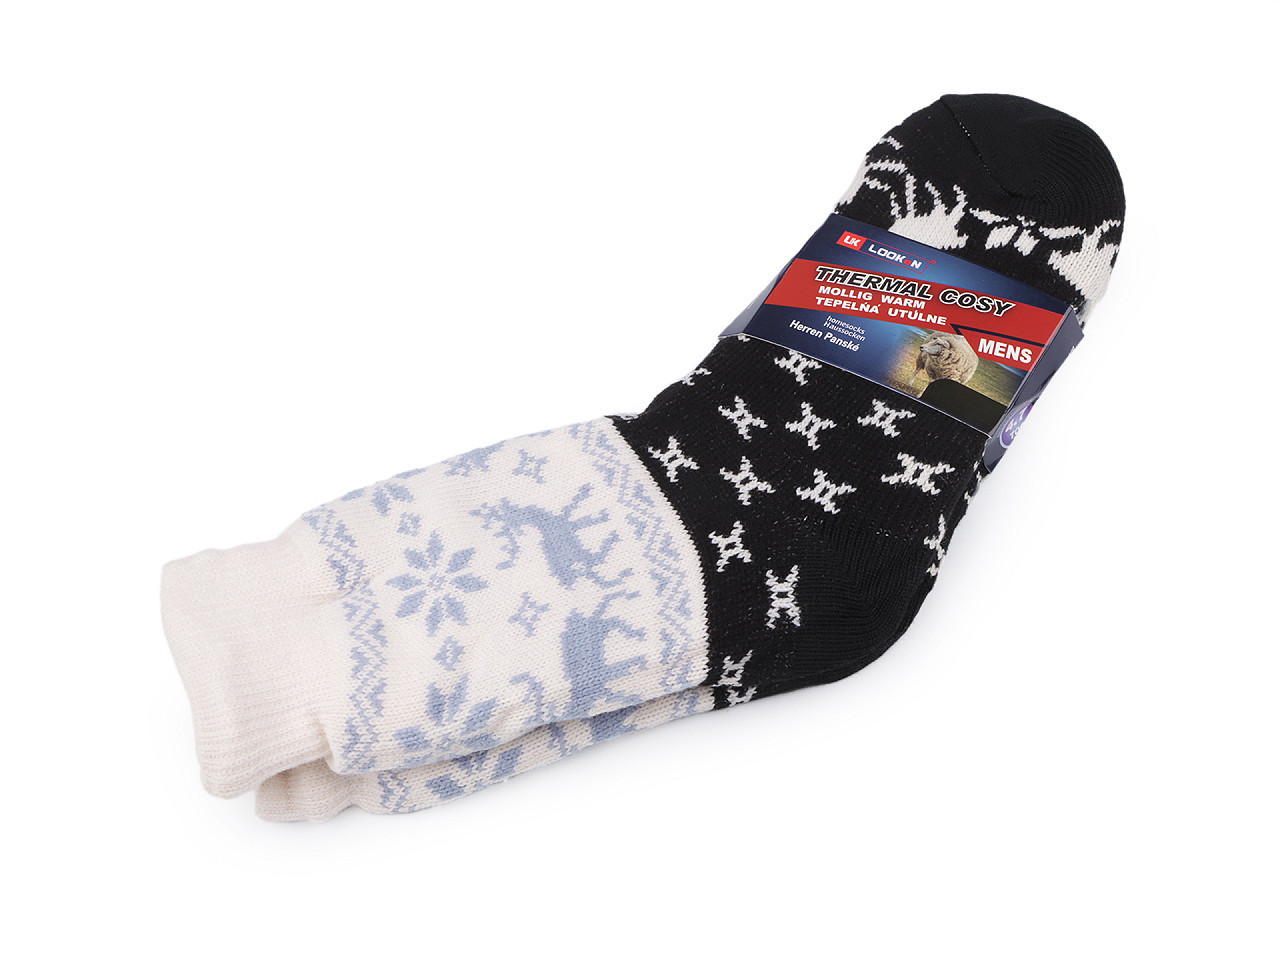 Ponožky zimní s kožíškem a protiskluzem, unisex, barva 18 (vel. 39-42) černá